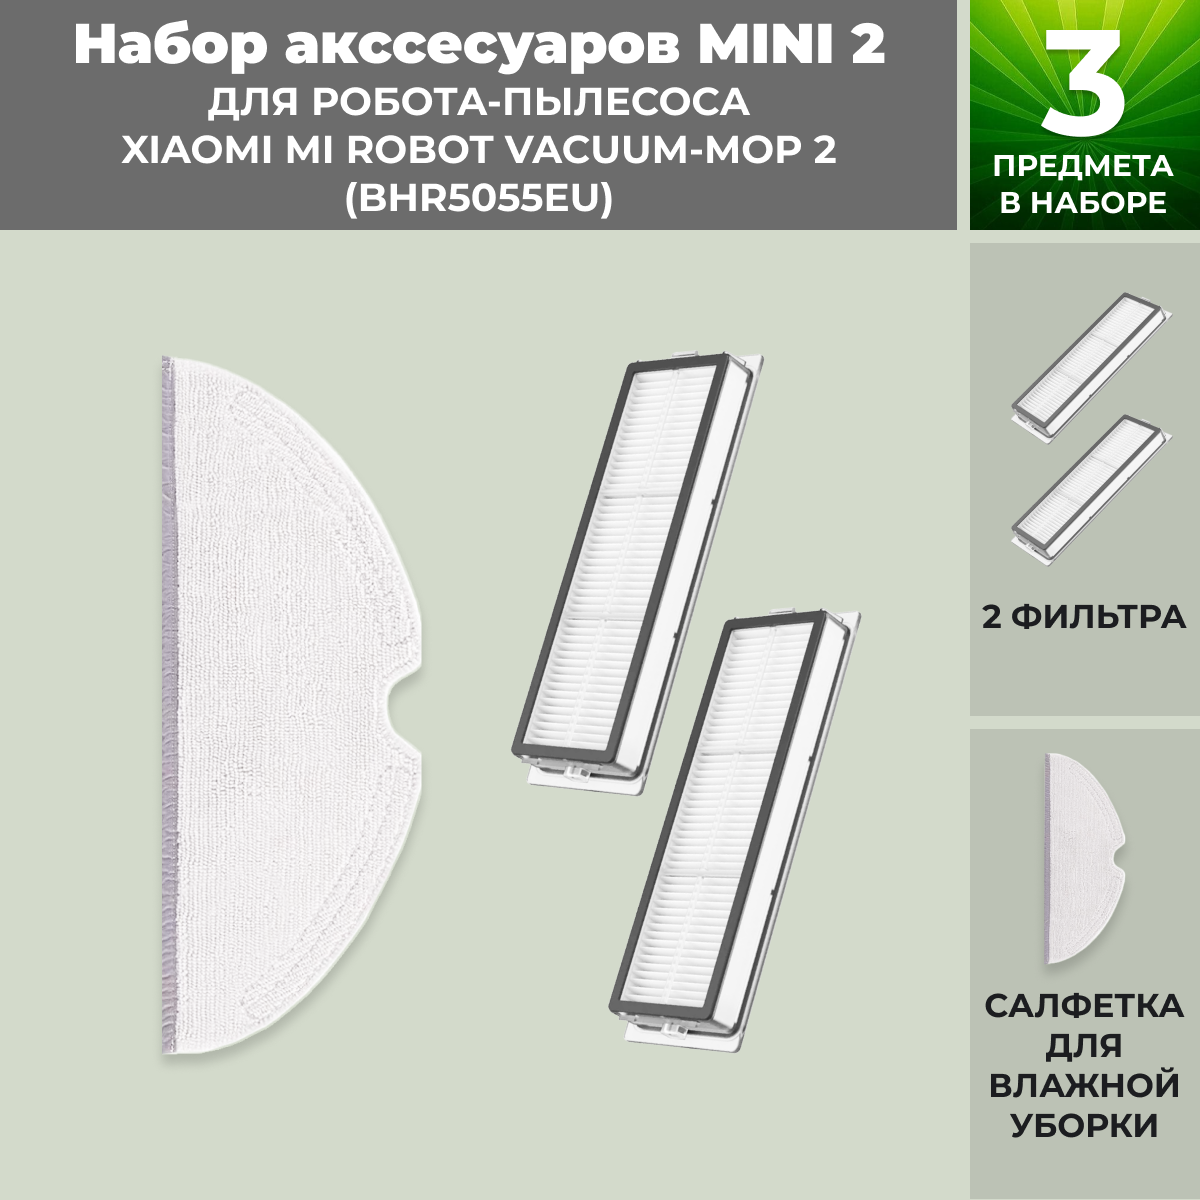 Набор аксессуаров Mini 2 для робота-пылесоса Xiaomi Mi Robot Vacuum-Mop 2 (BHR5055EU) 558635, фото 1